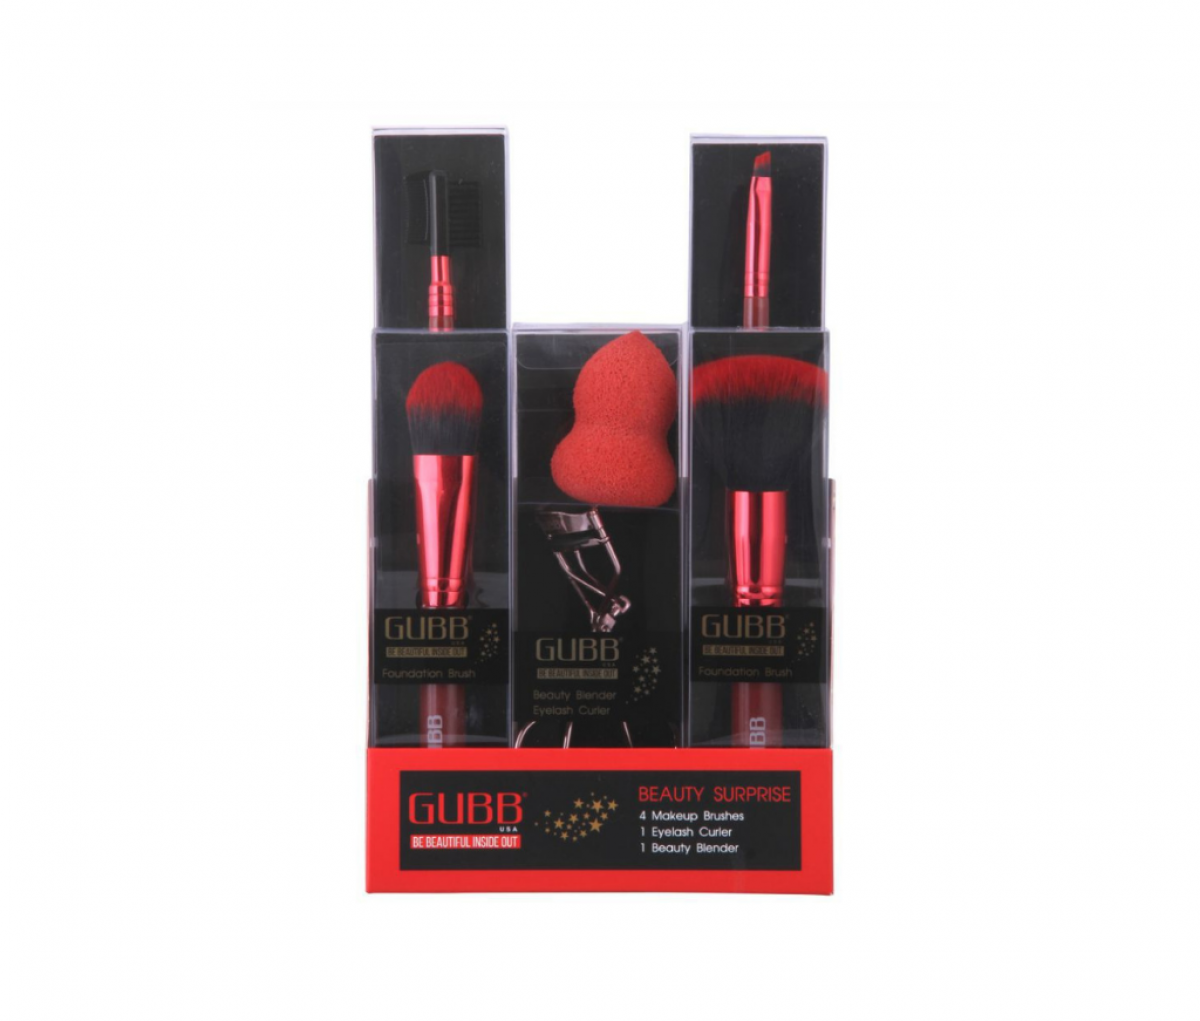 GUBB Beauty Kit 5 Make Up Brushes  Eye Lash Curler  Beauty Blender 